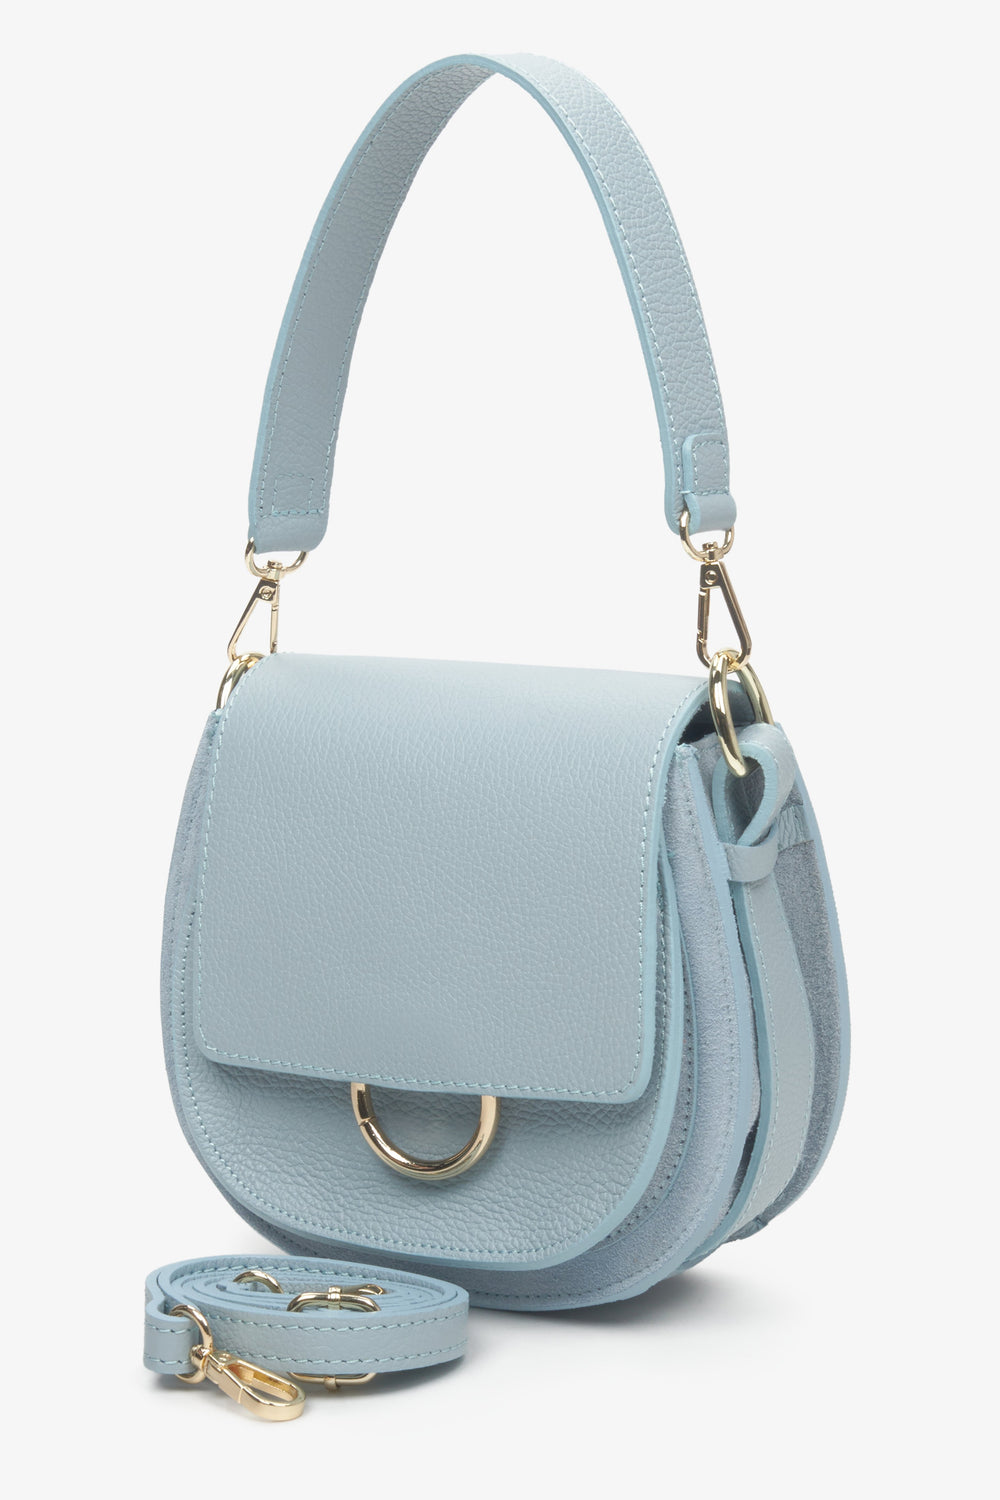 Niebieska, mała torebka damska z włoskiej skóry naturalnej na ramię z dodatkowym paskiem.